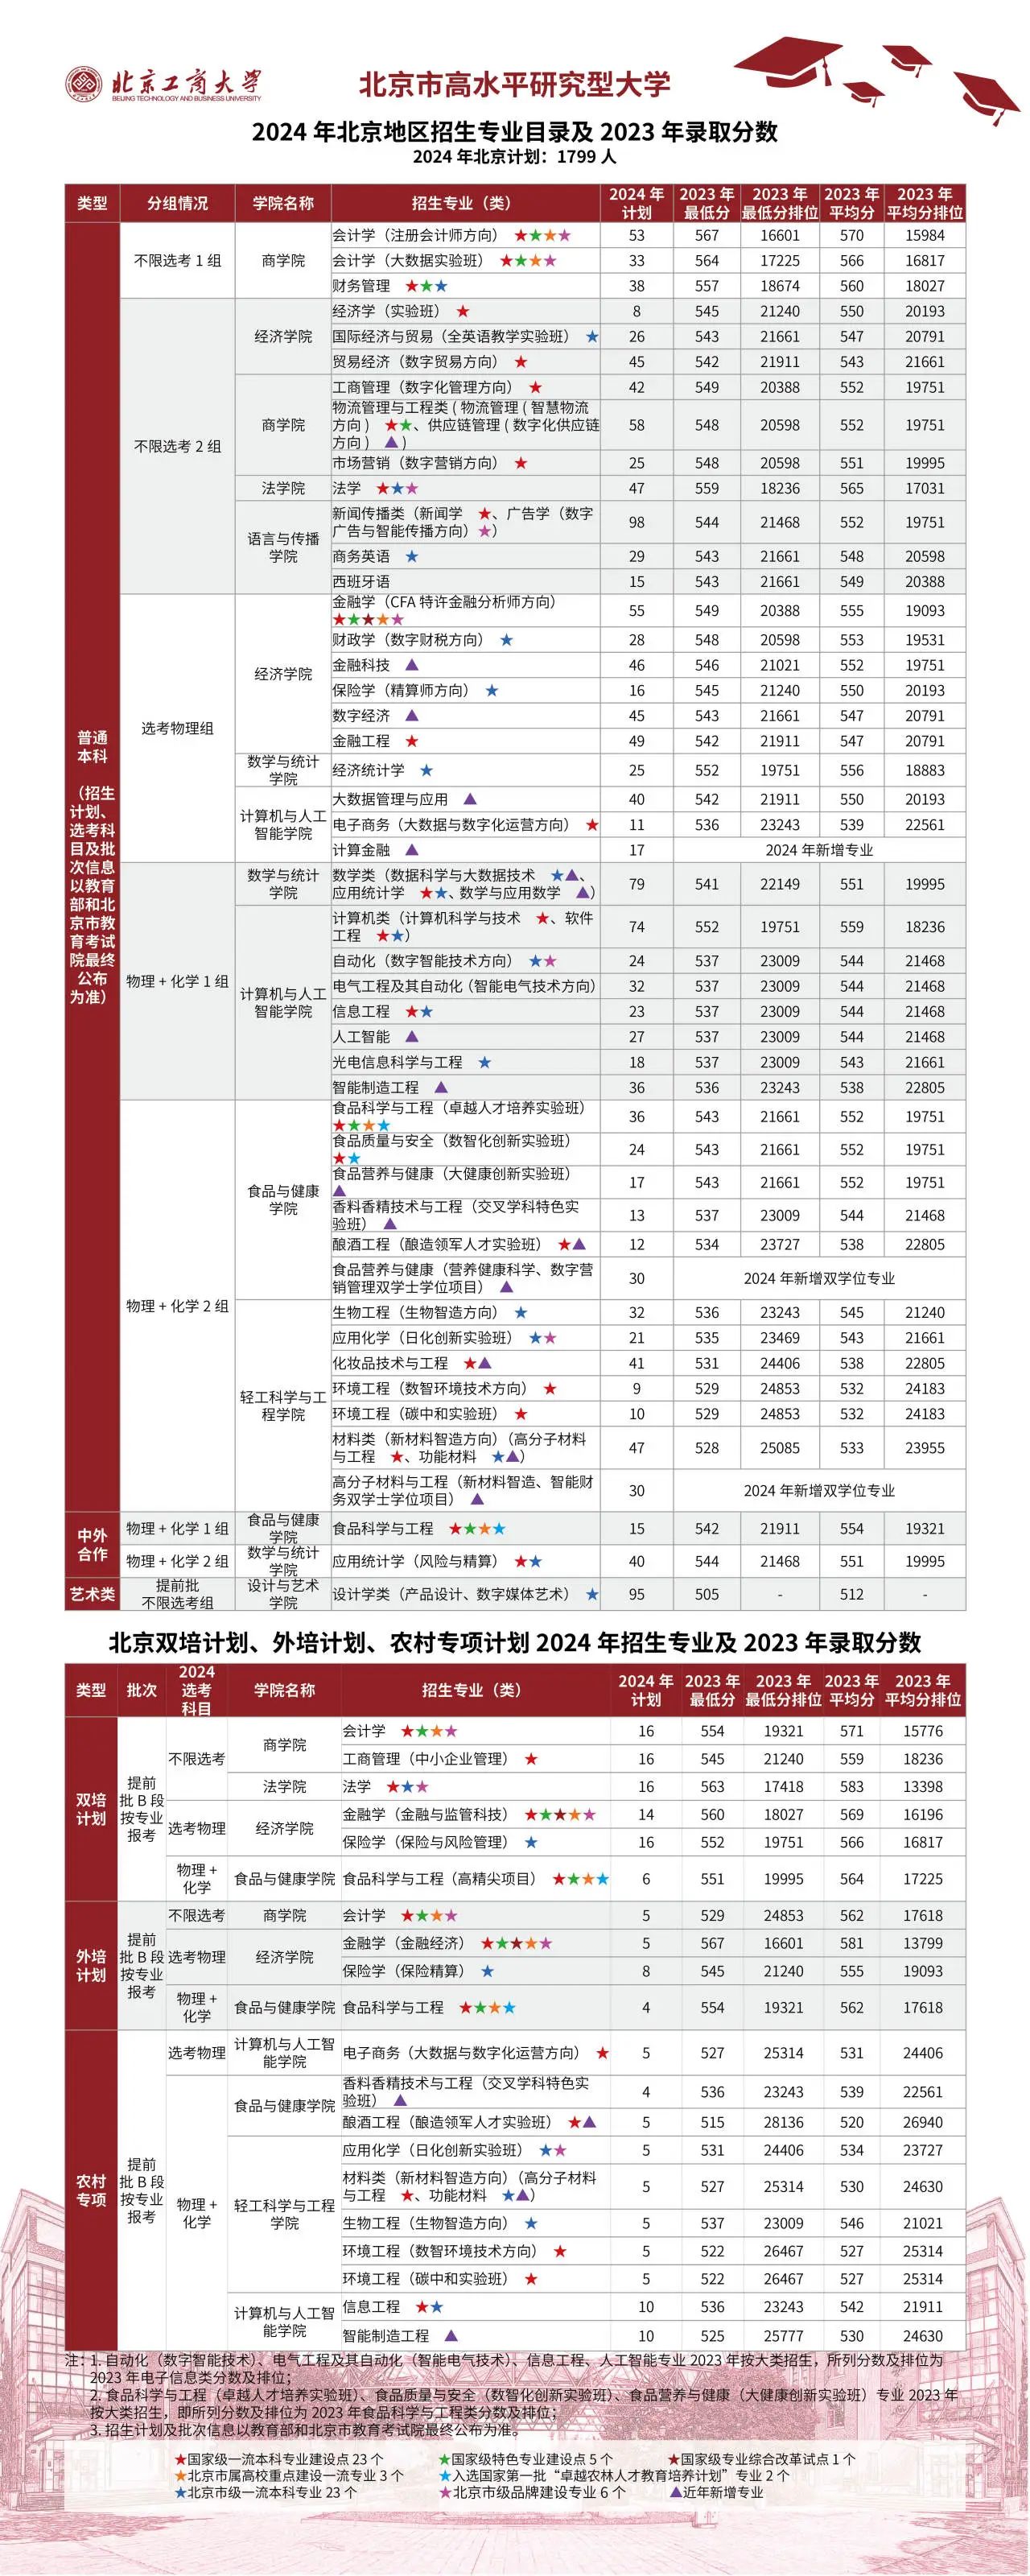 北京工商大学2024在京招生计划及近三年专业录取分数